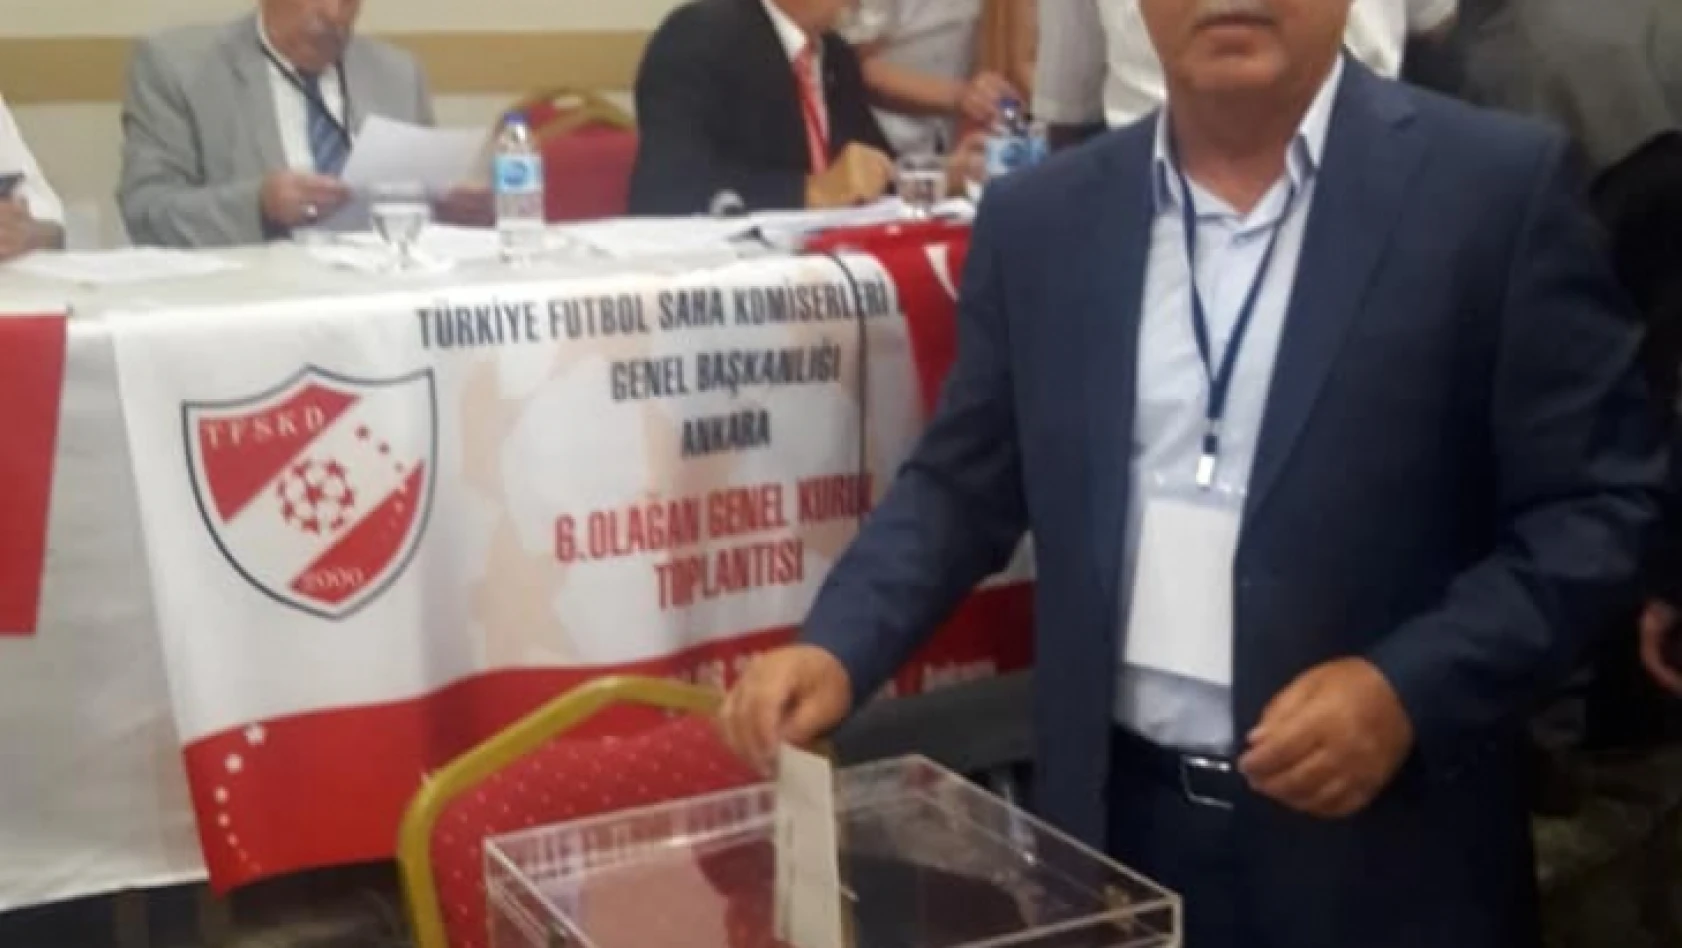 TFSKD Genel Merkez Yönetim Kurulu toplantısı Elazığ'da